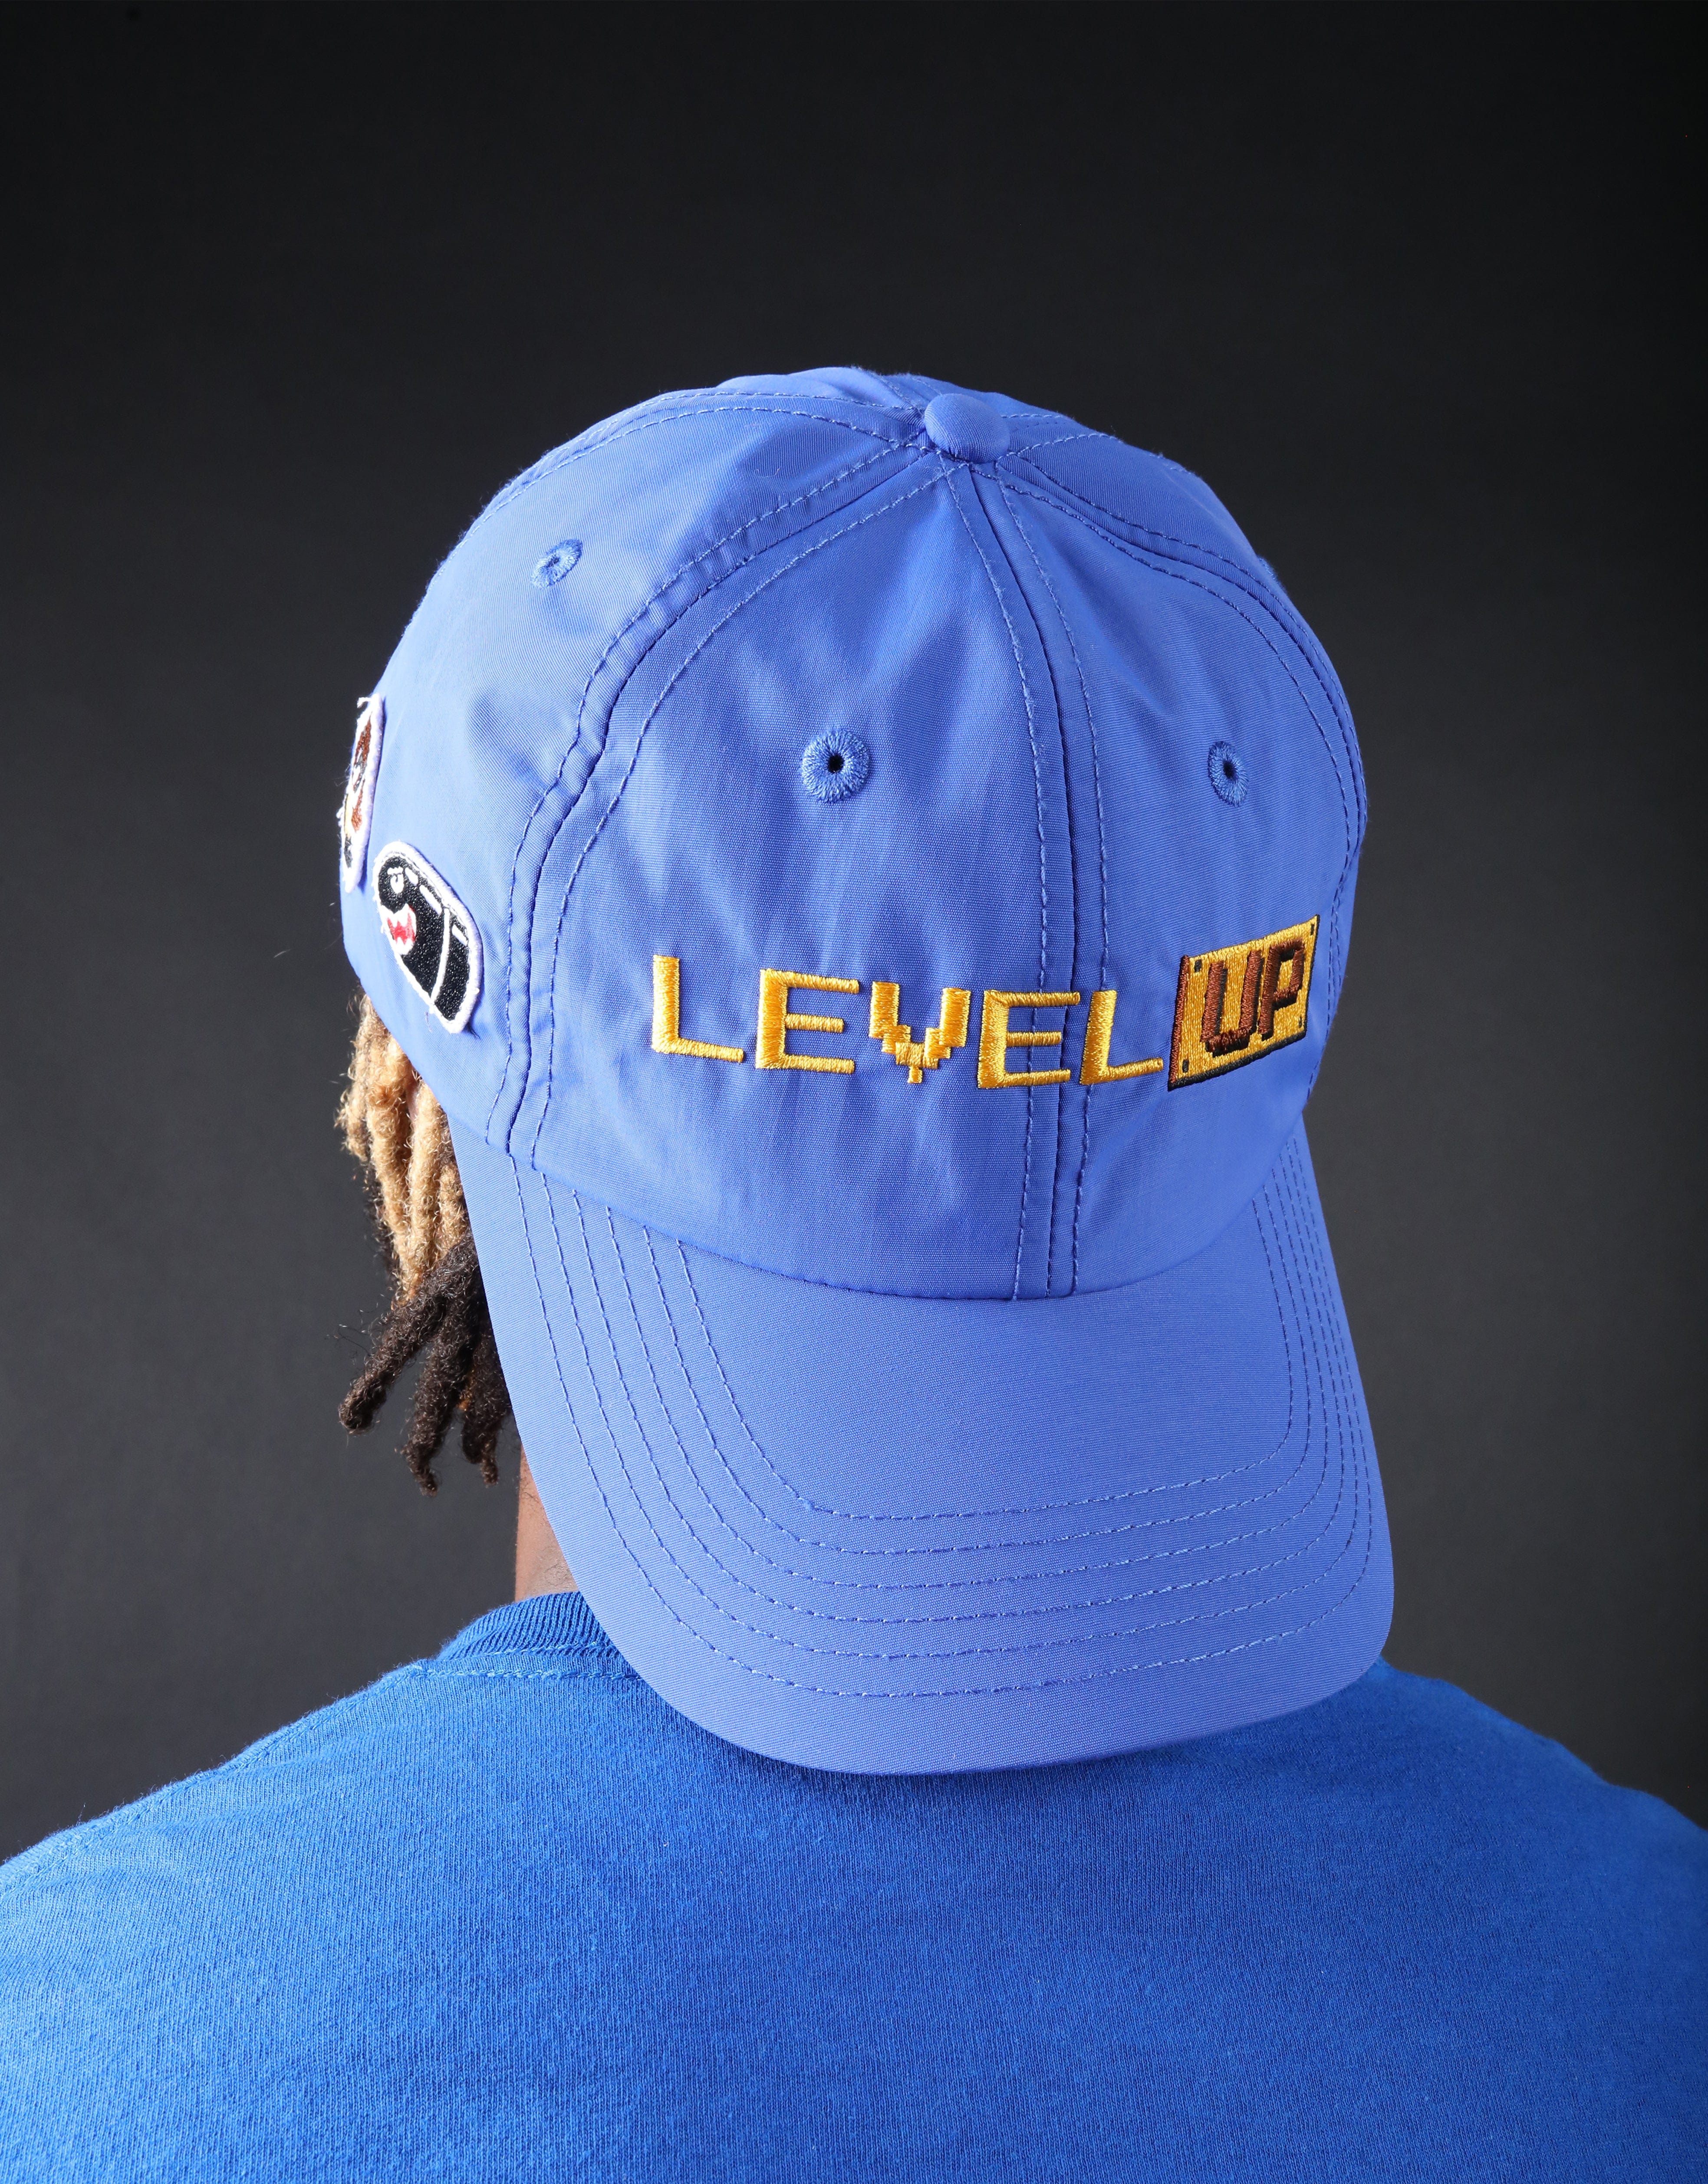 Level Up - Blue